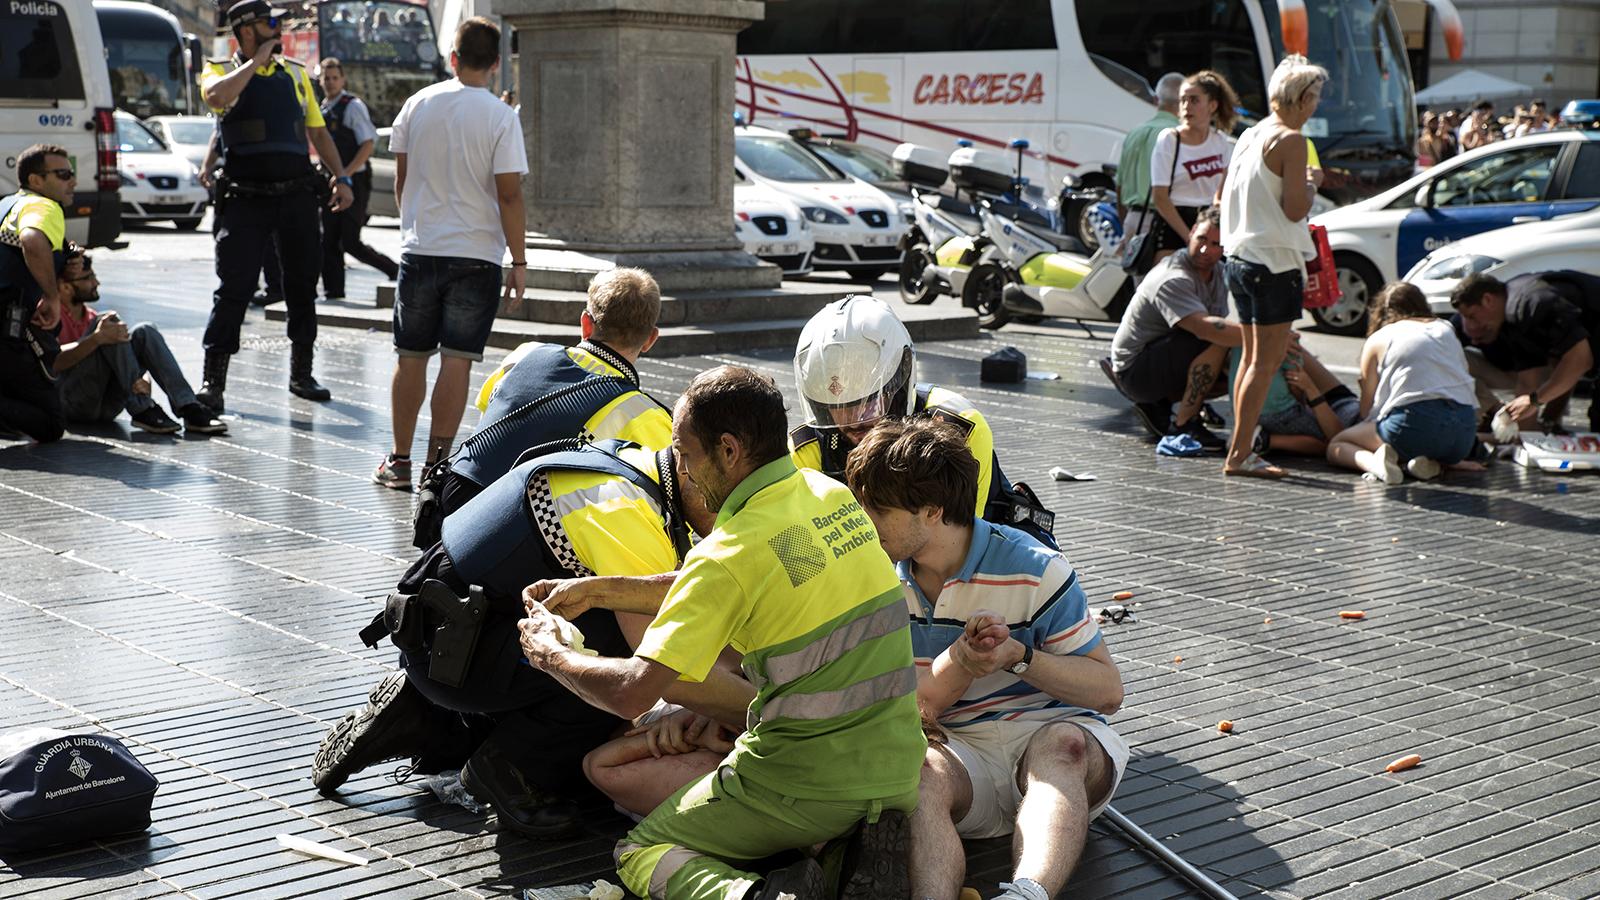 Kaos efter skåpbilsattacken på paradgatan La Rambla i Barcelona.